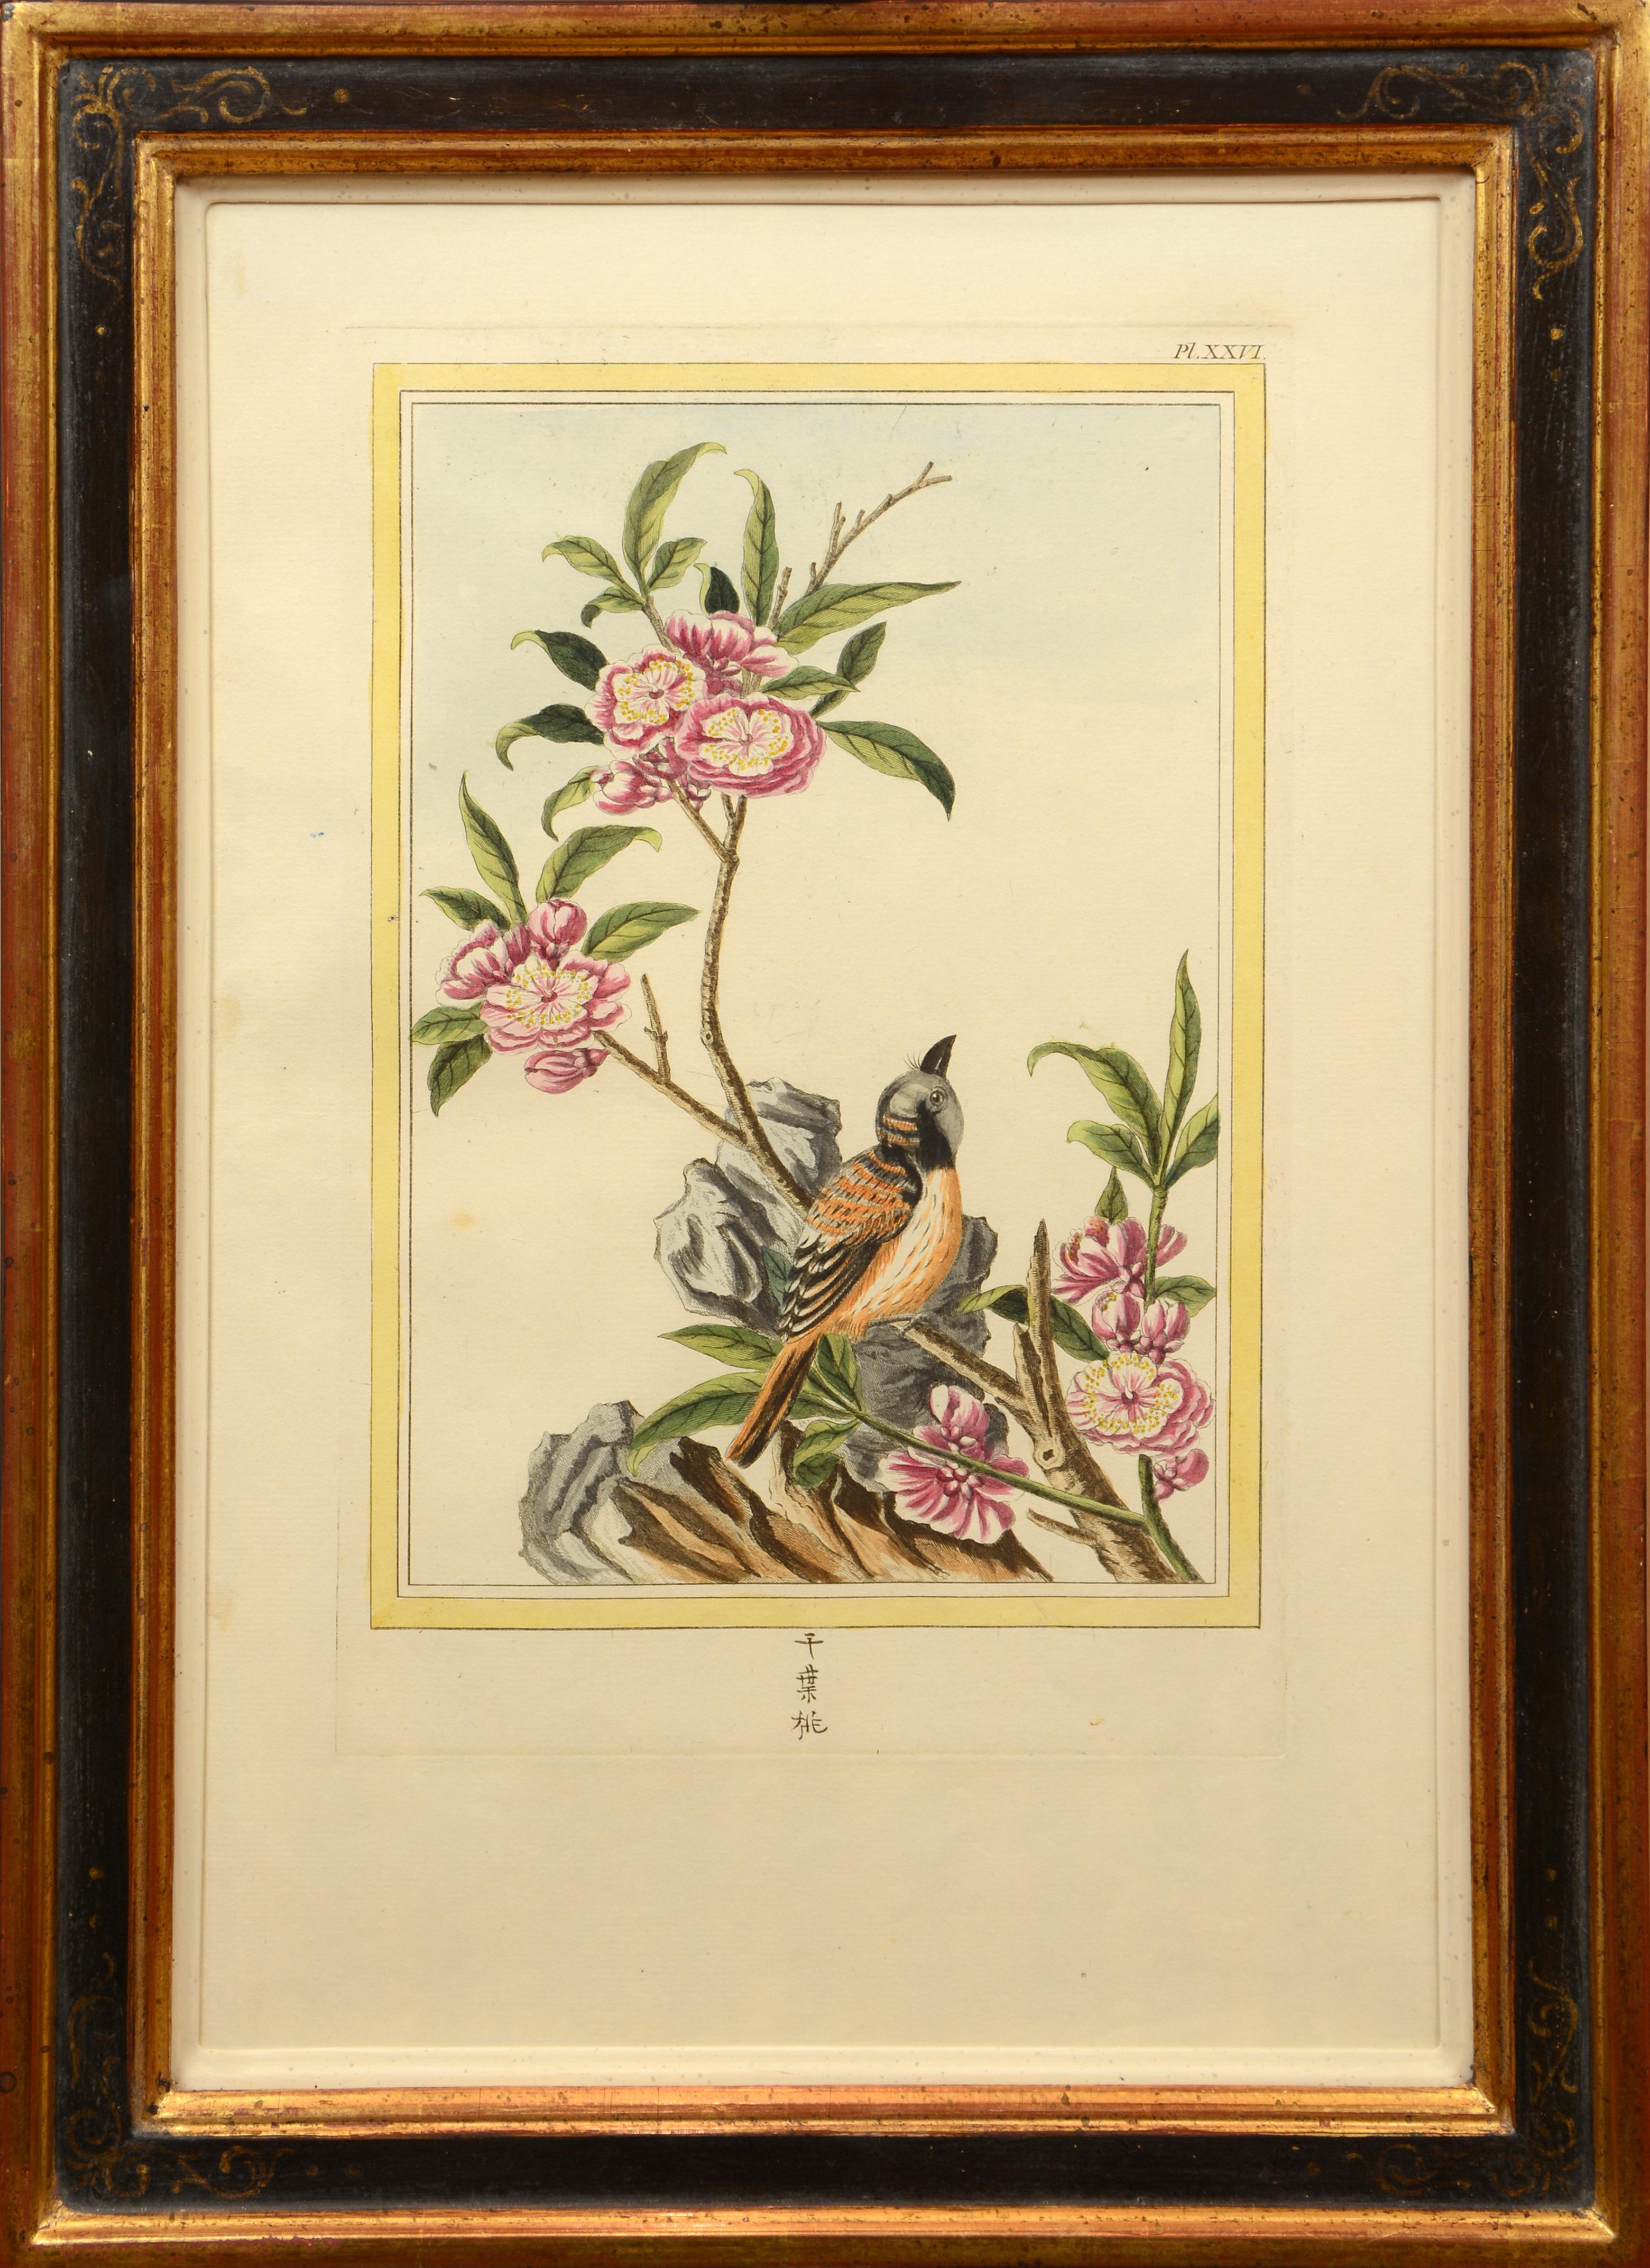 Les Fleurs les Plus Belles et Les Plus Curieuses: Set of Twelve Chinese Flowers - Naturalistic Print by Pierre Joseph Buchoz